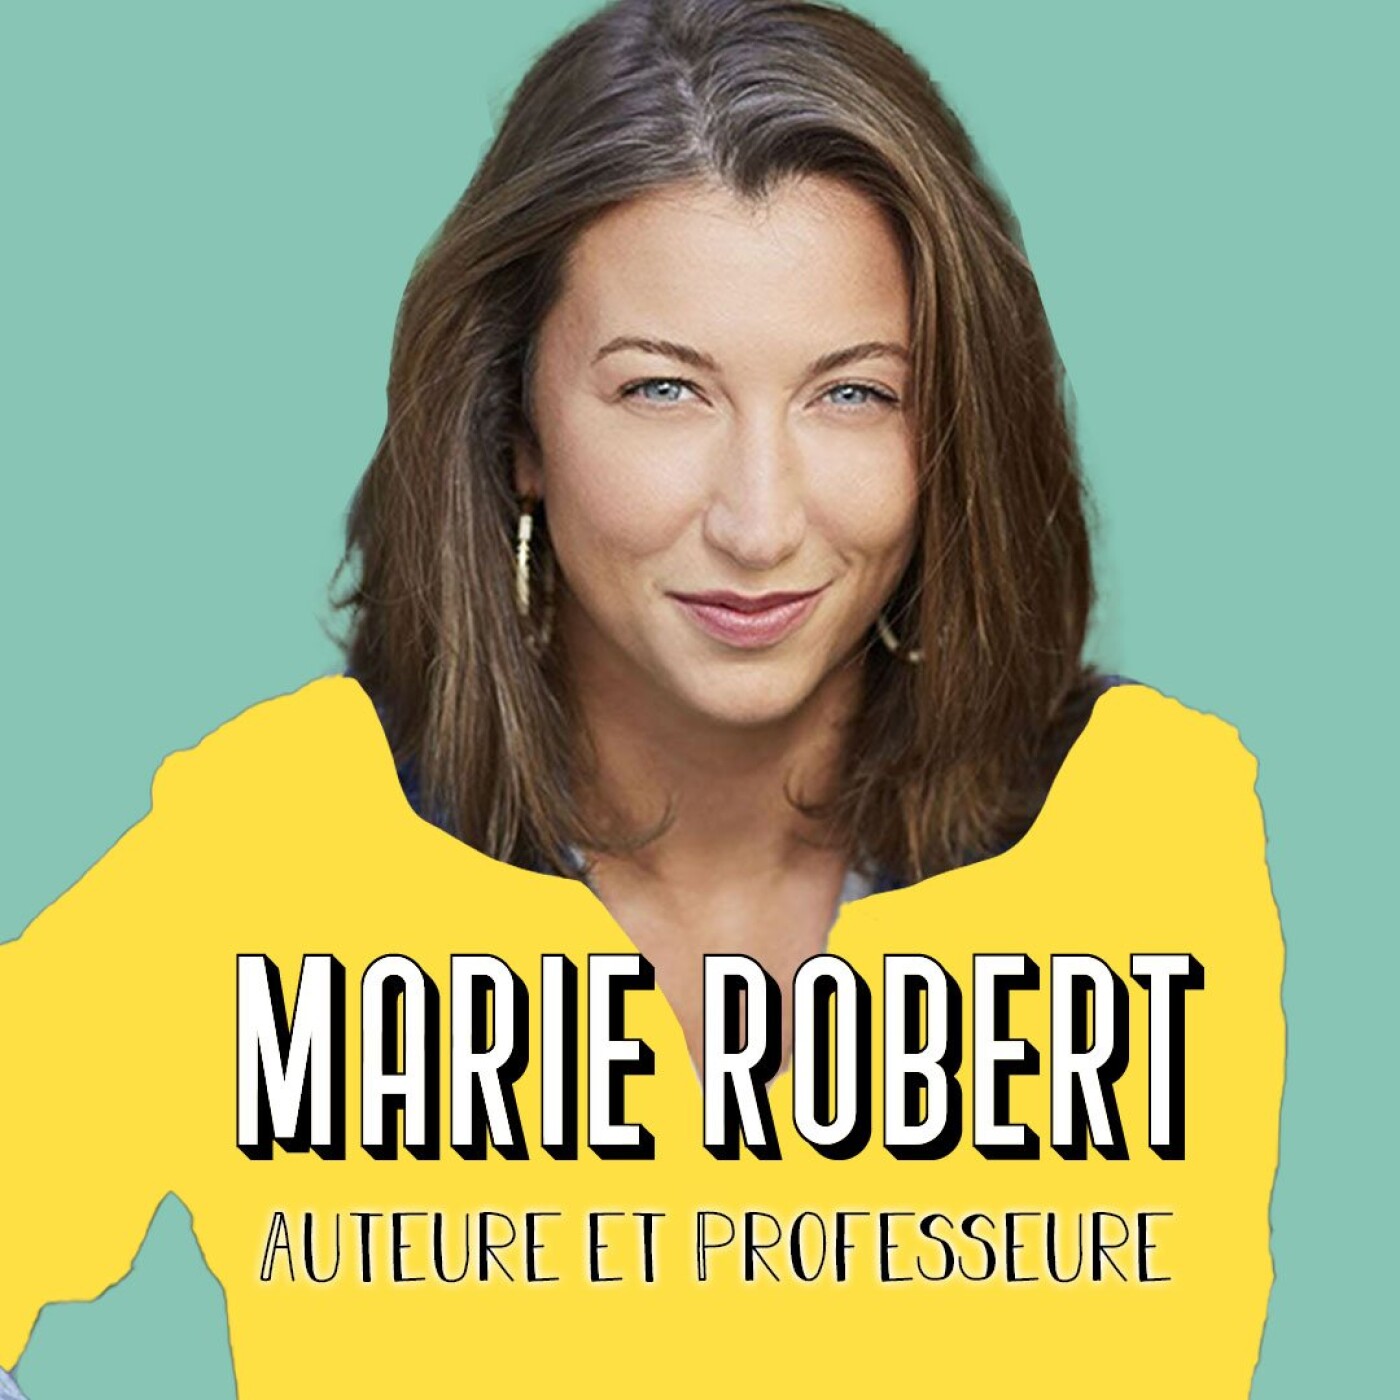 Marie Robert, Philosophie is sexy - "Le vent se lève, il faut tenter de vivre"